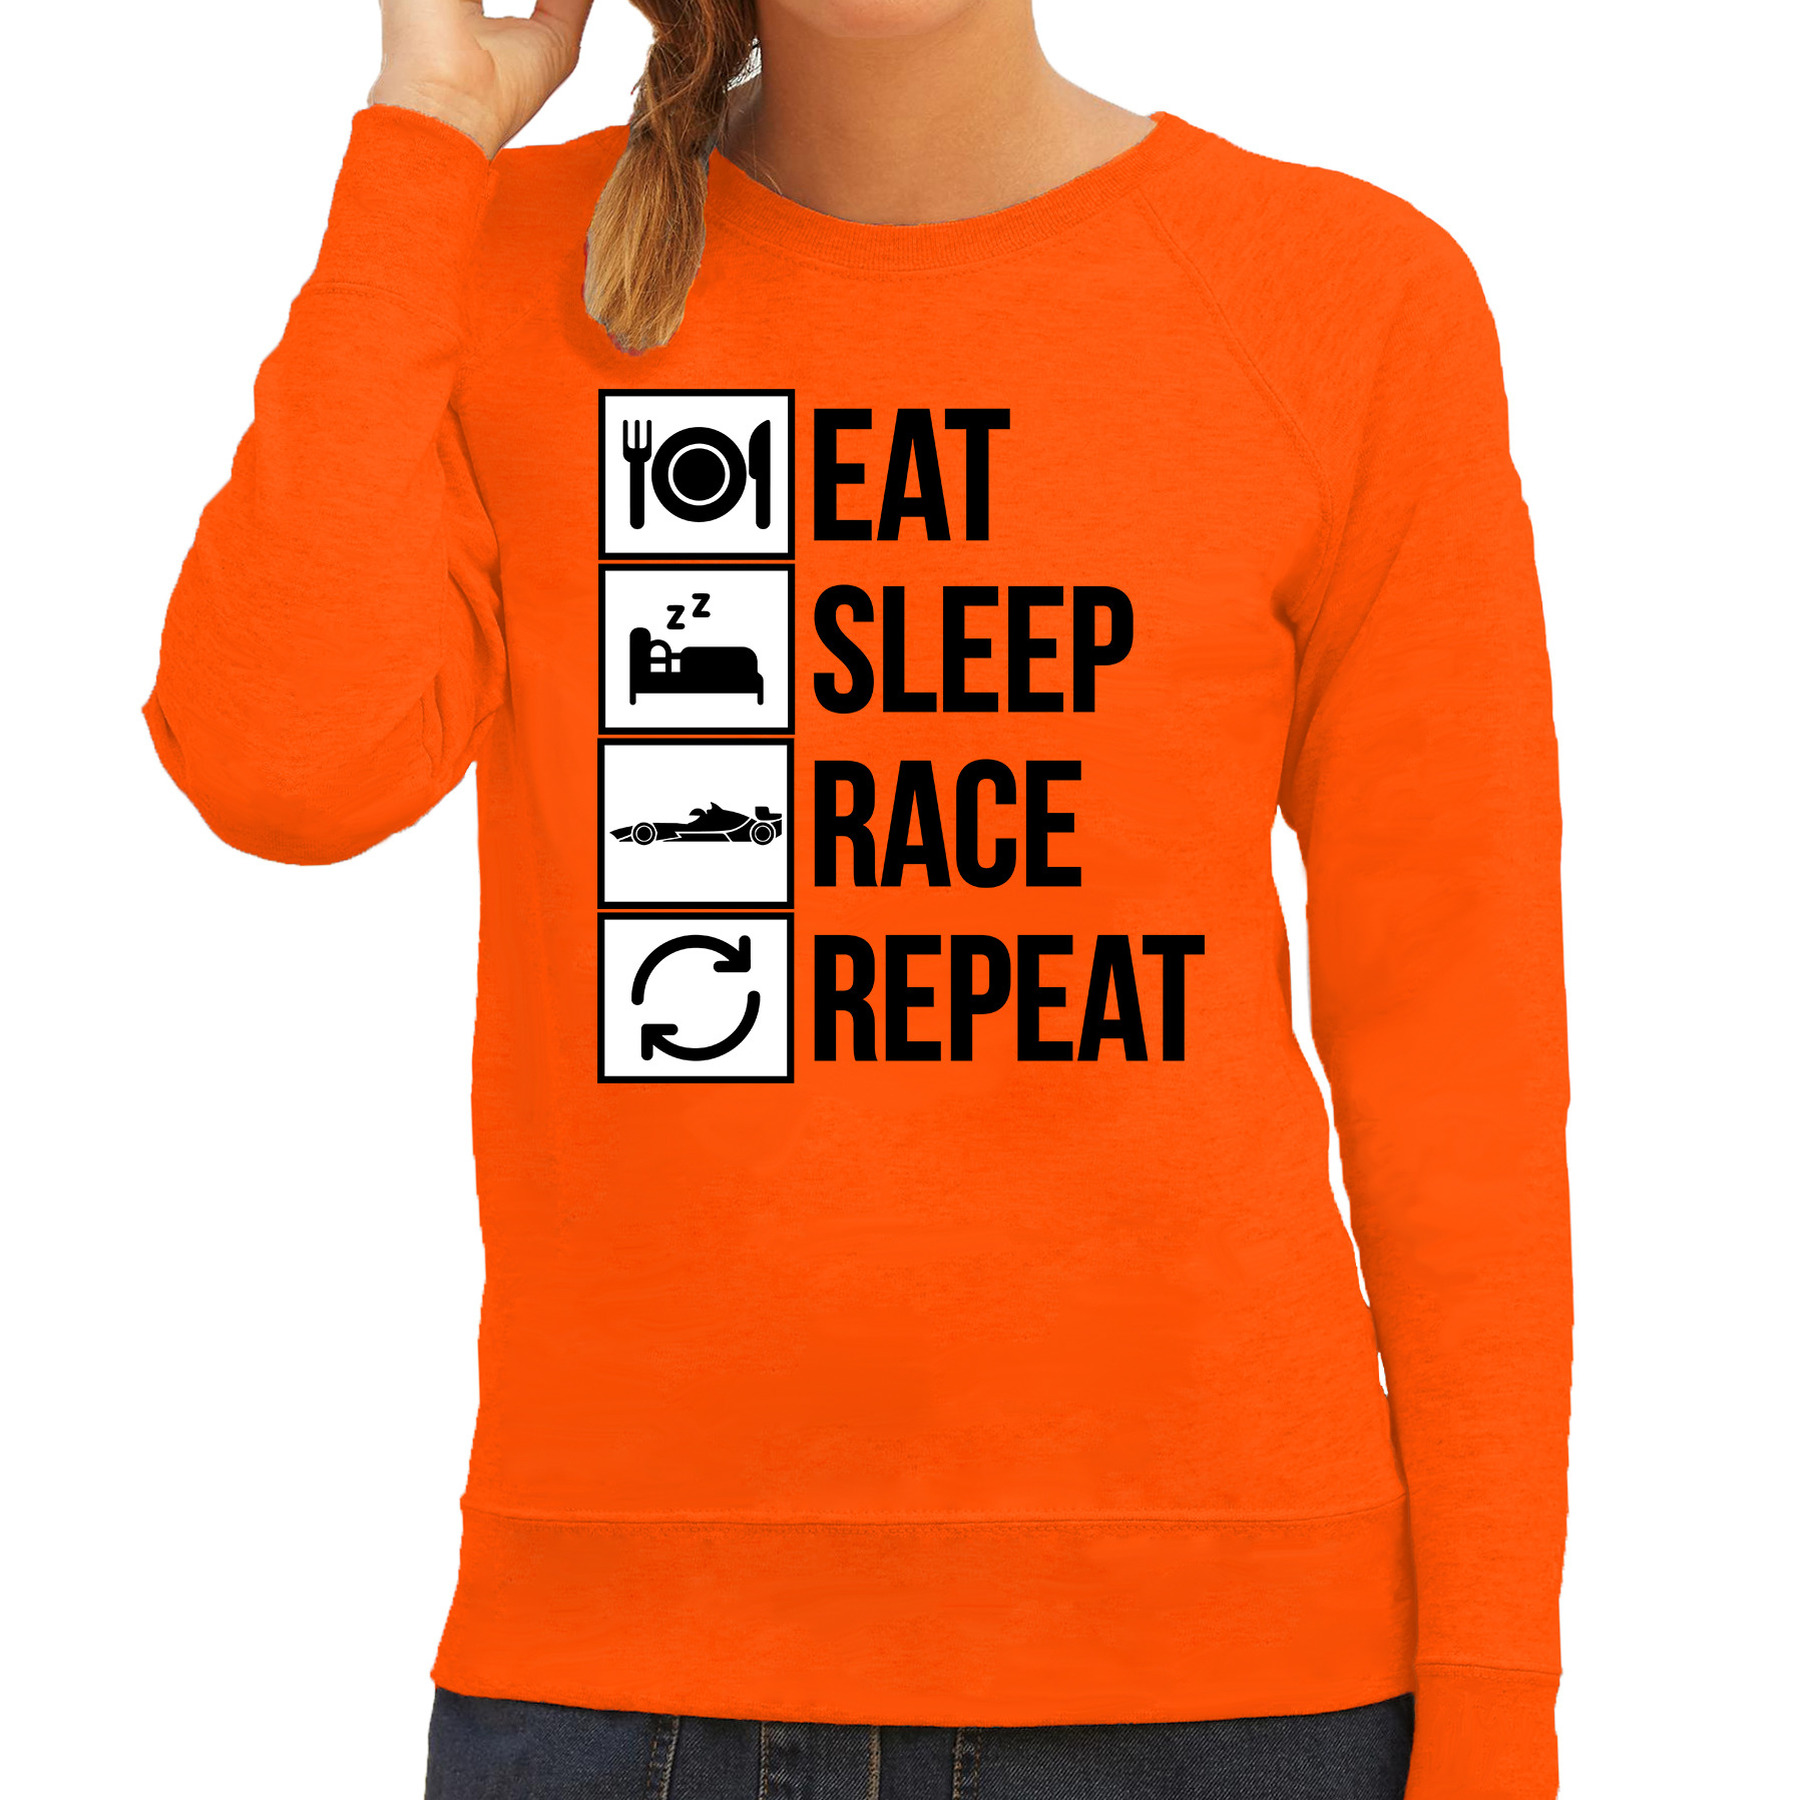 Eat sleep race repeat supporter-race fan sweater oranje voor dames